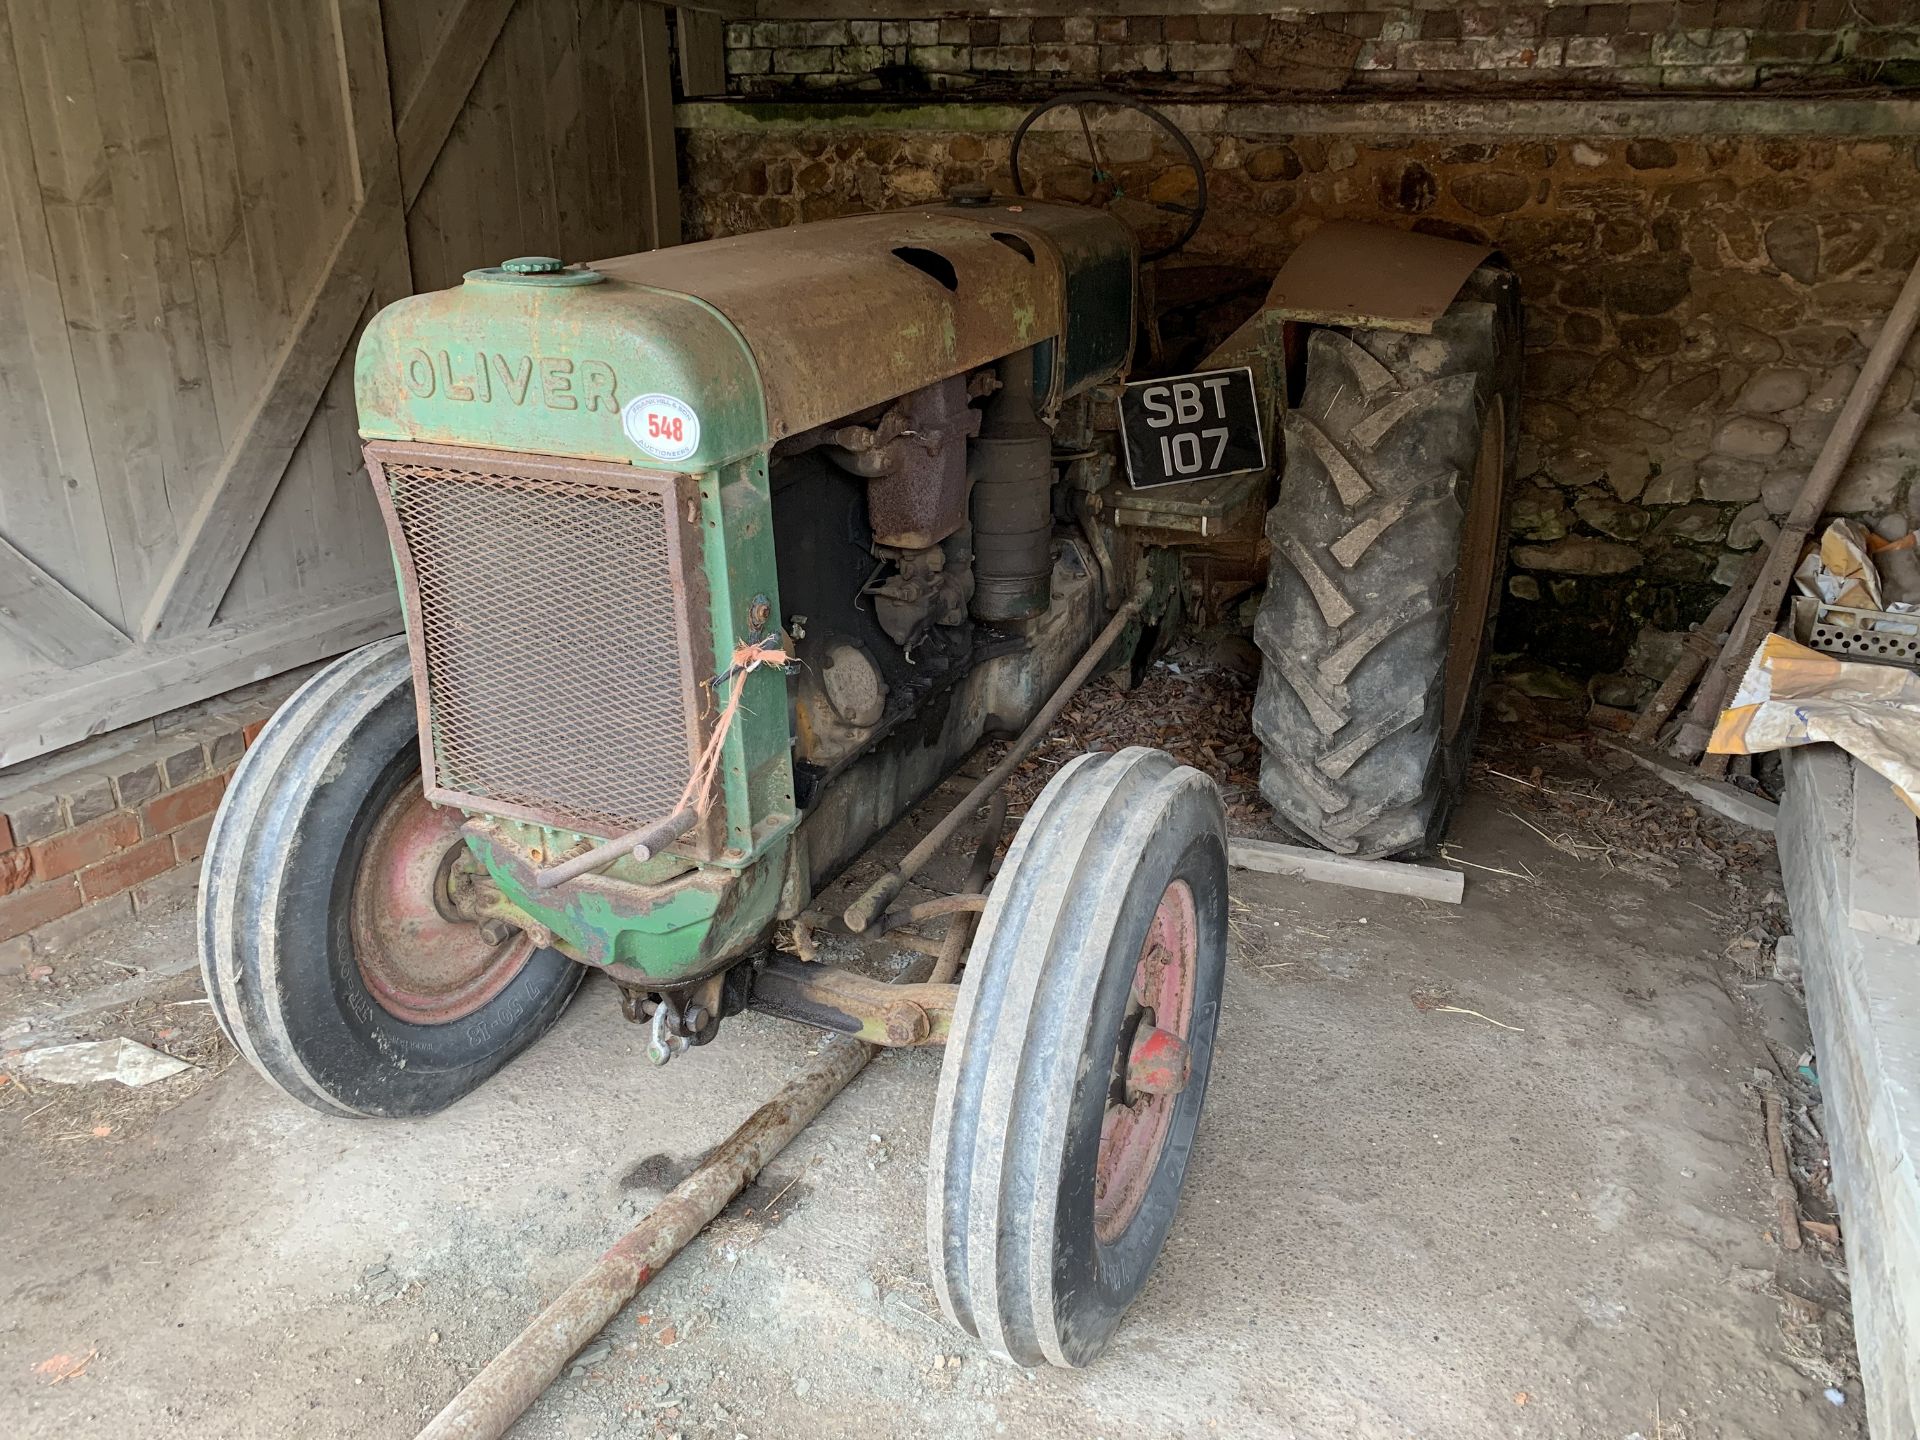 Oliver 80 petrol TVO tractor, built 1947, registered 1956, SBT 107 with V5